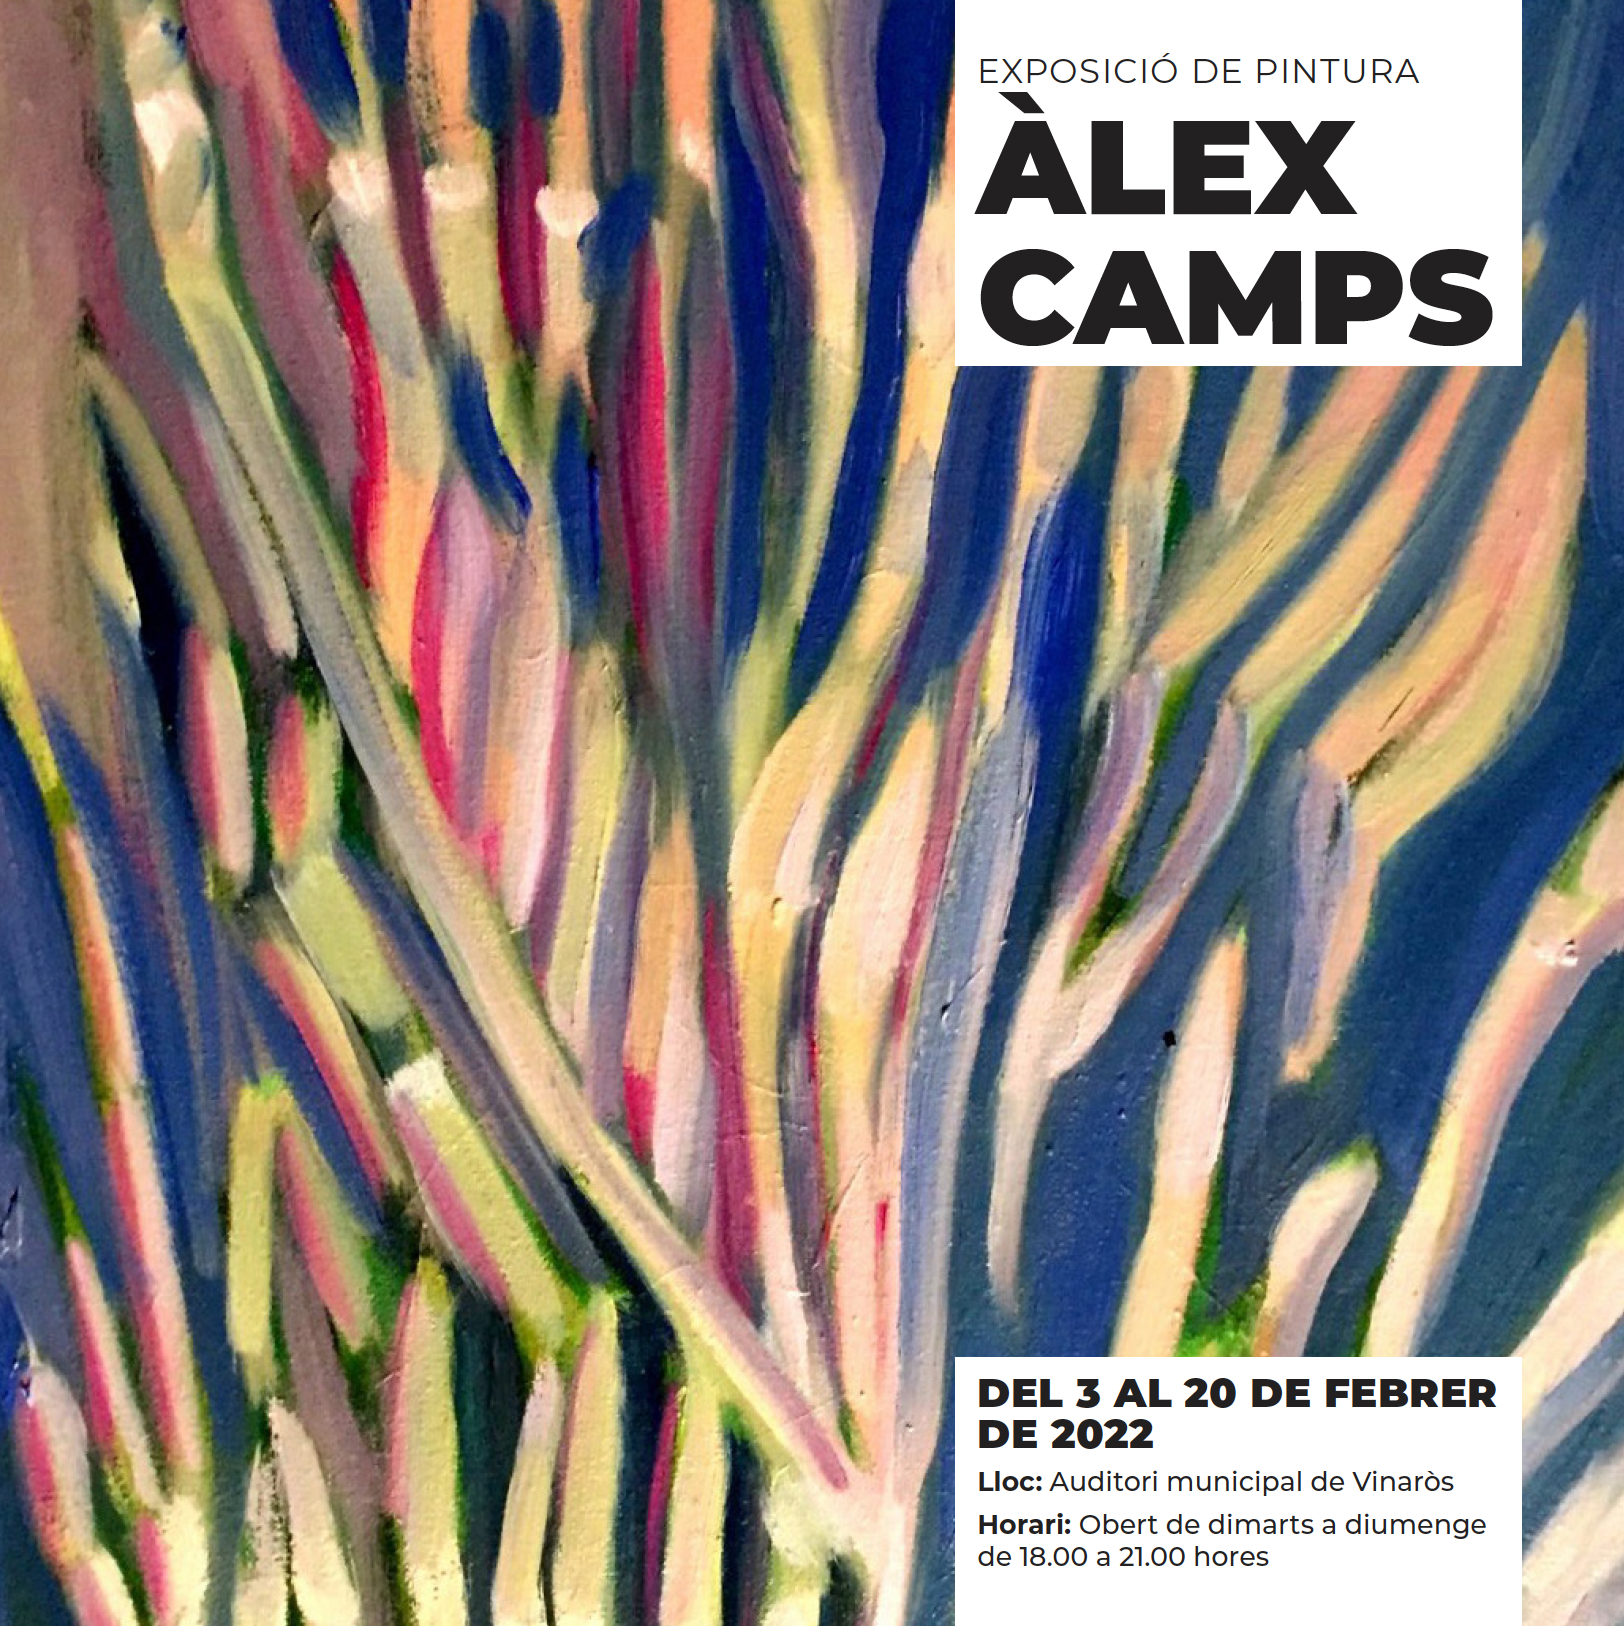 Alex camps exposicio